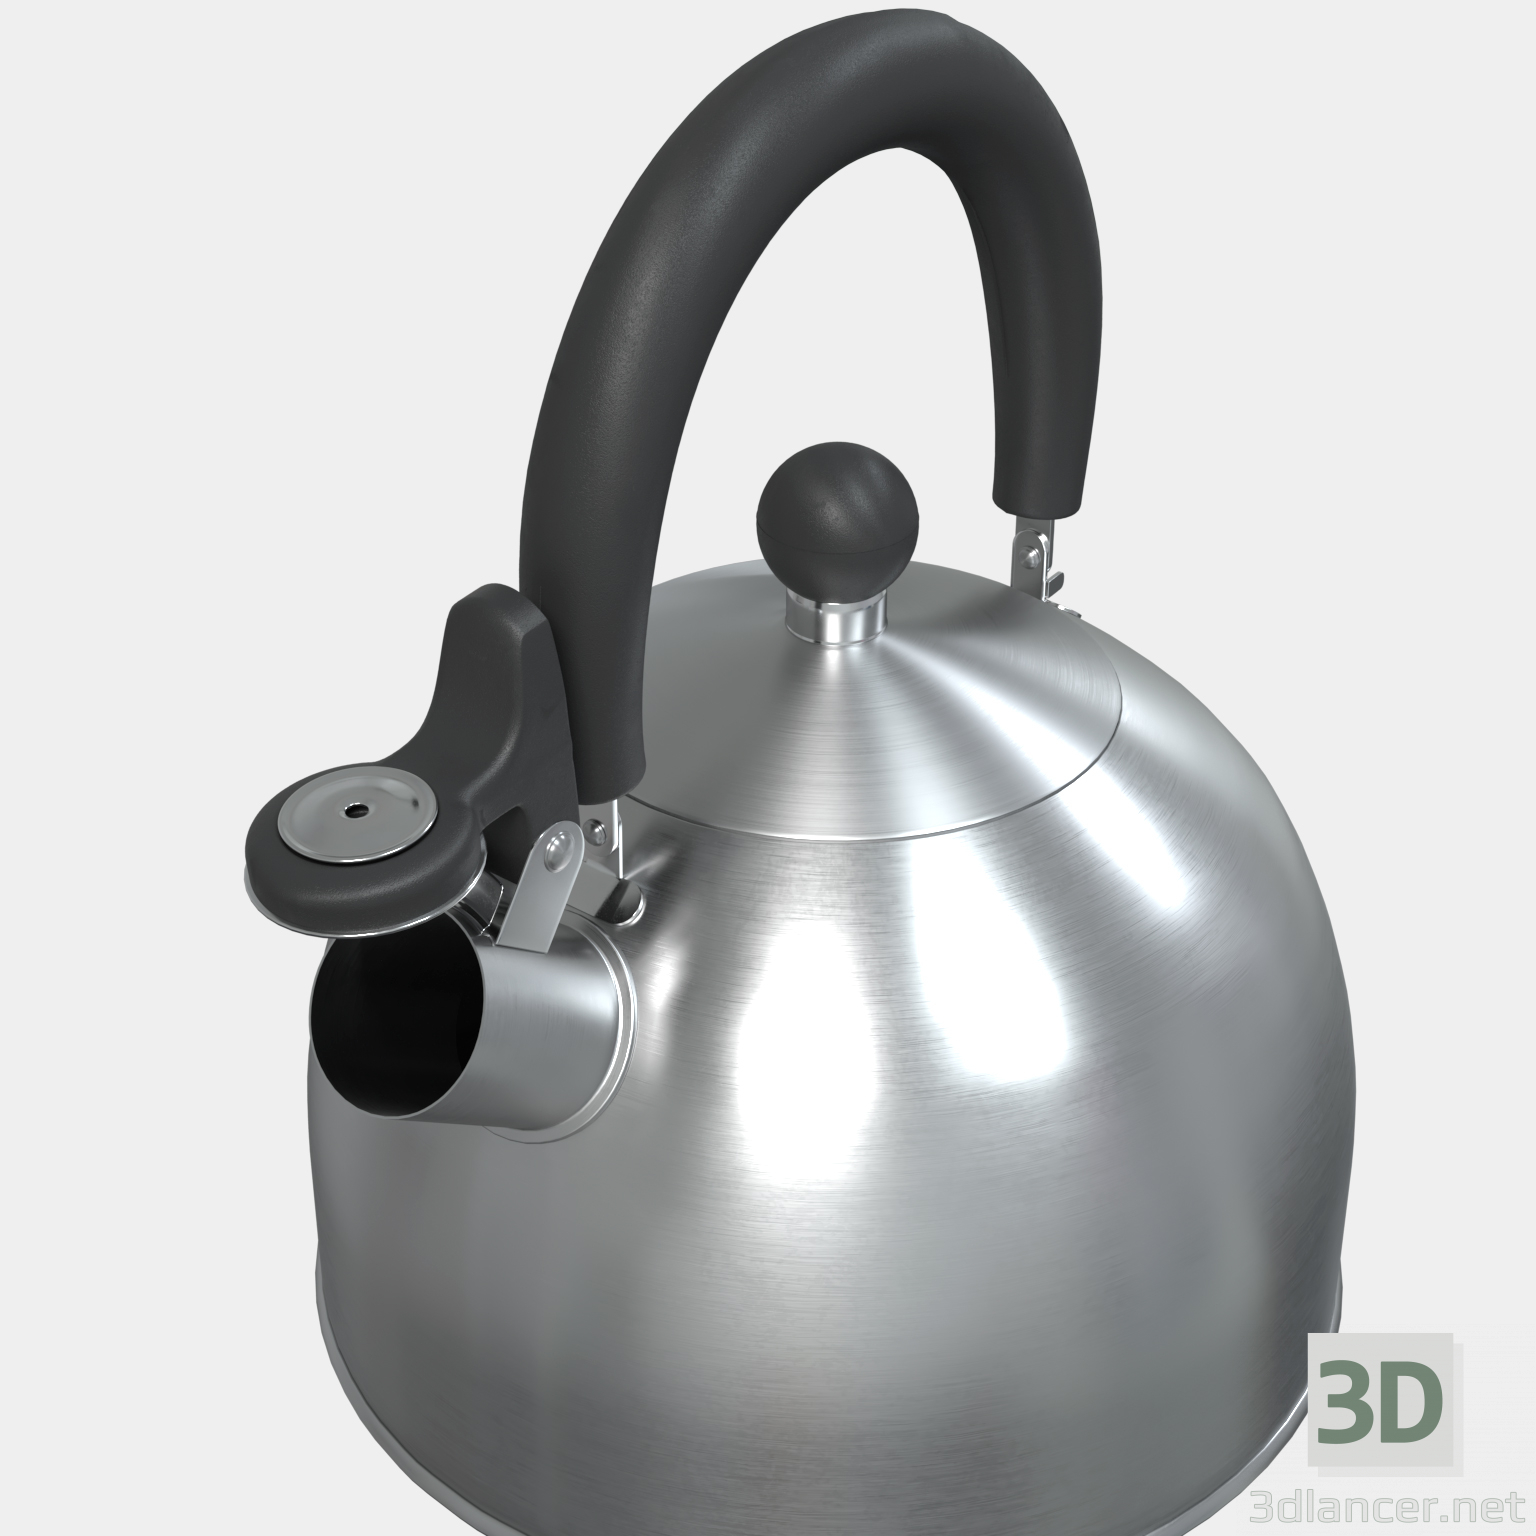 3d Whistle kettle model buy - render